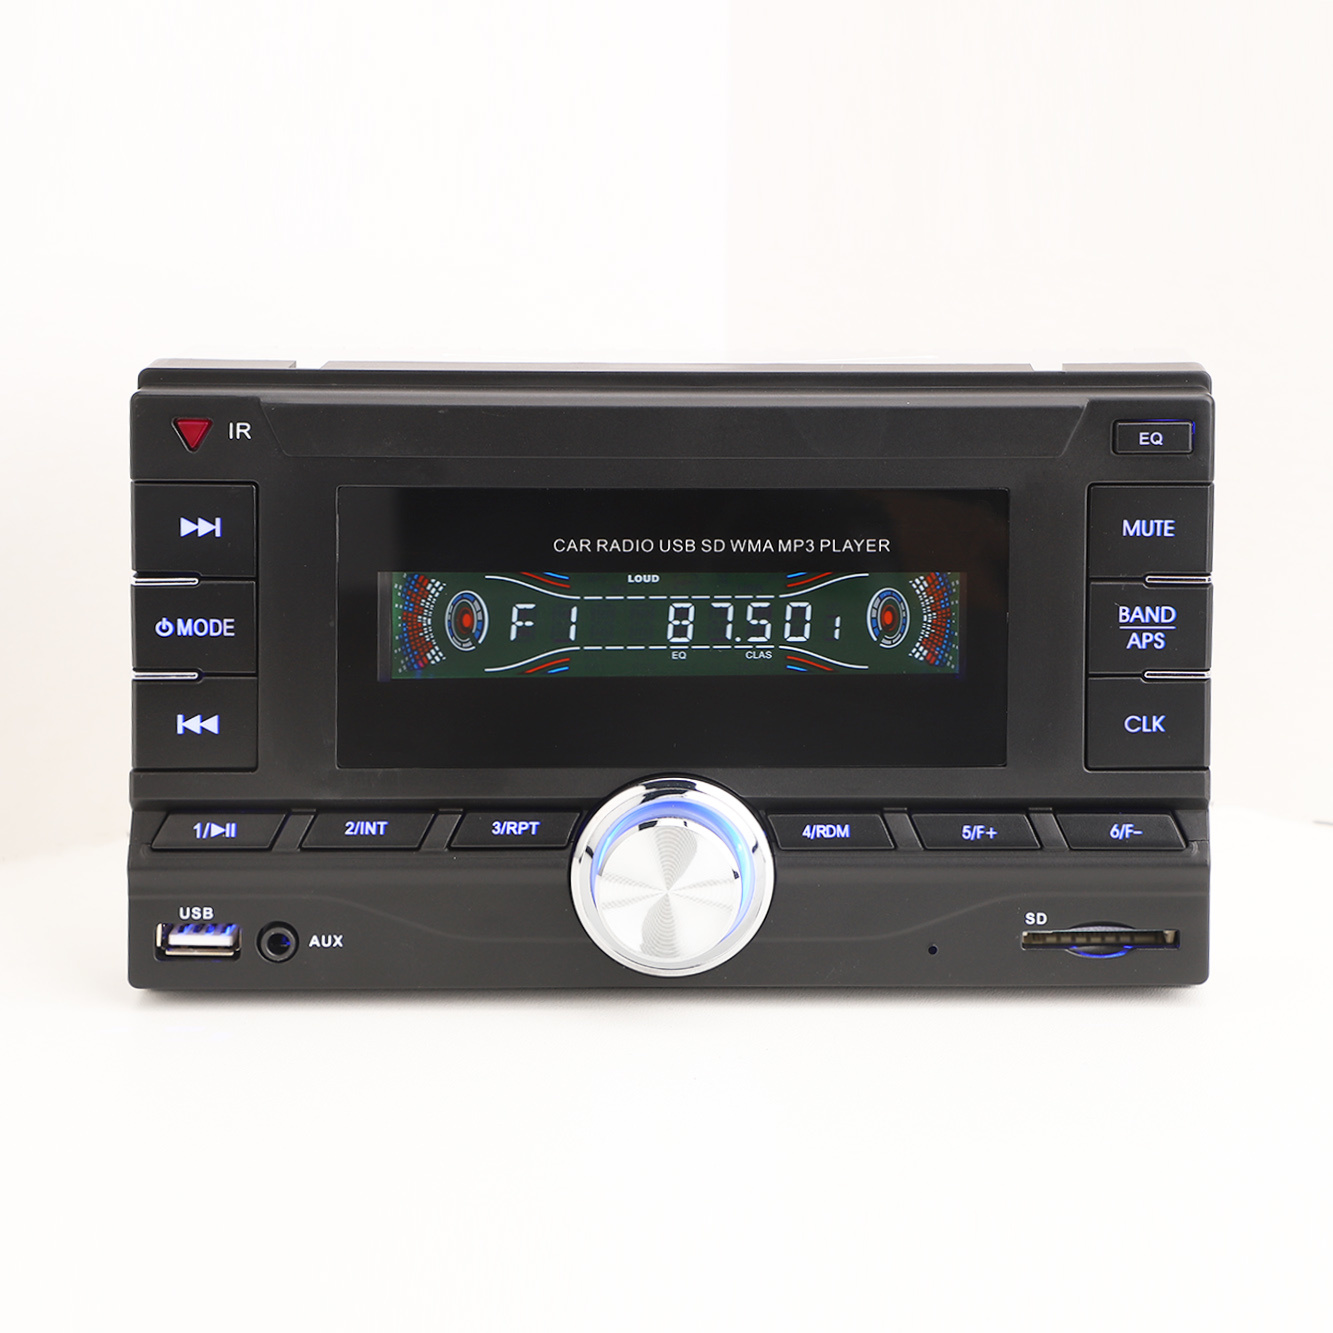 MP3-плеер для автомобиля Стерео MP3 в автомобиле Автомобильное радио Автомобильная электроника Авто аудио Автомобильный ЖК-плеер Автомобильный MP3-плеер Double DIN Автомобильное MP3-радио